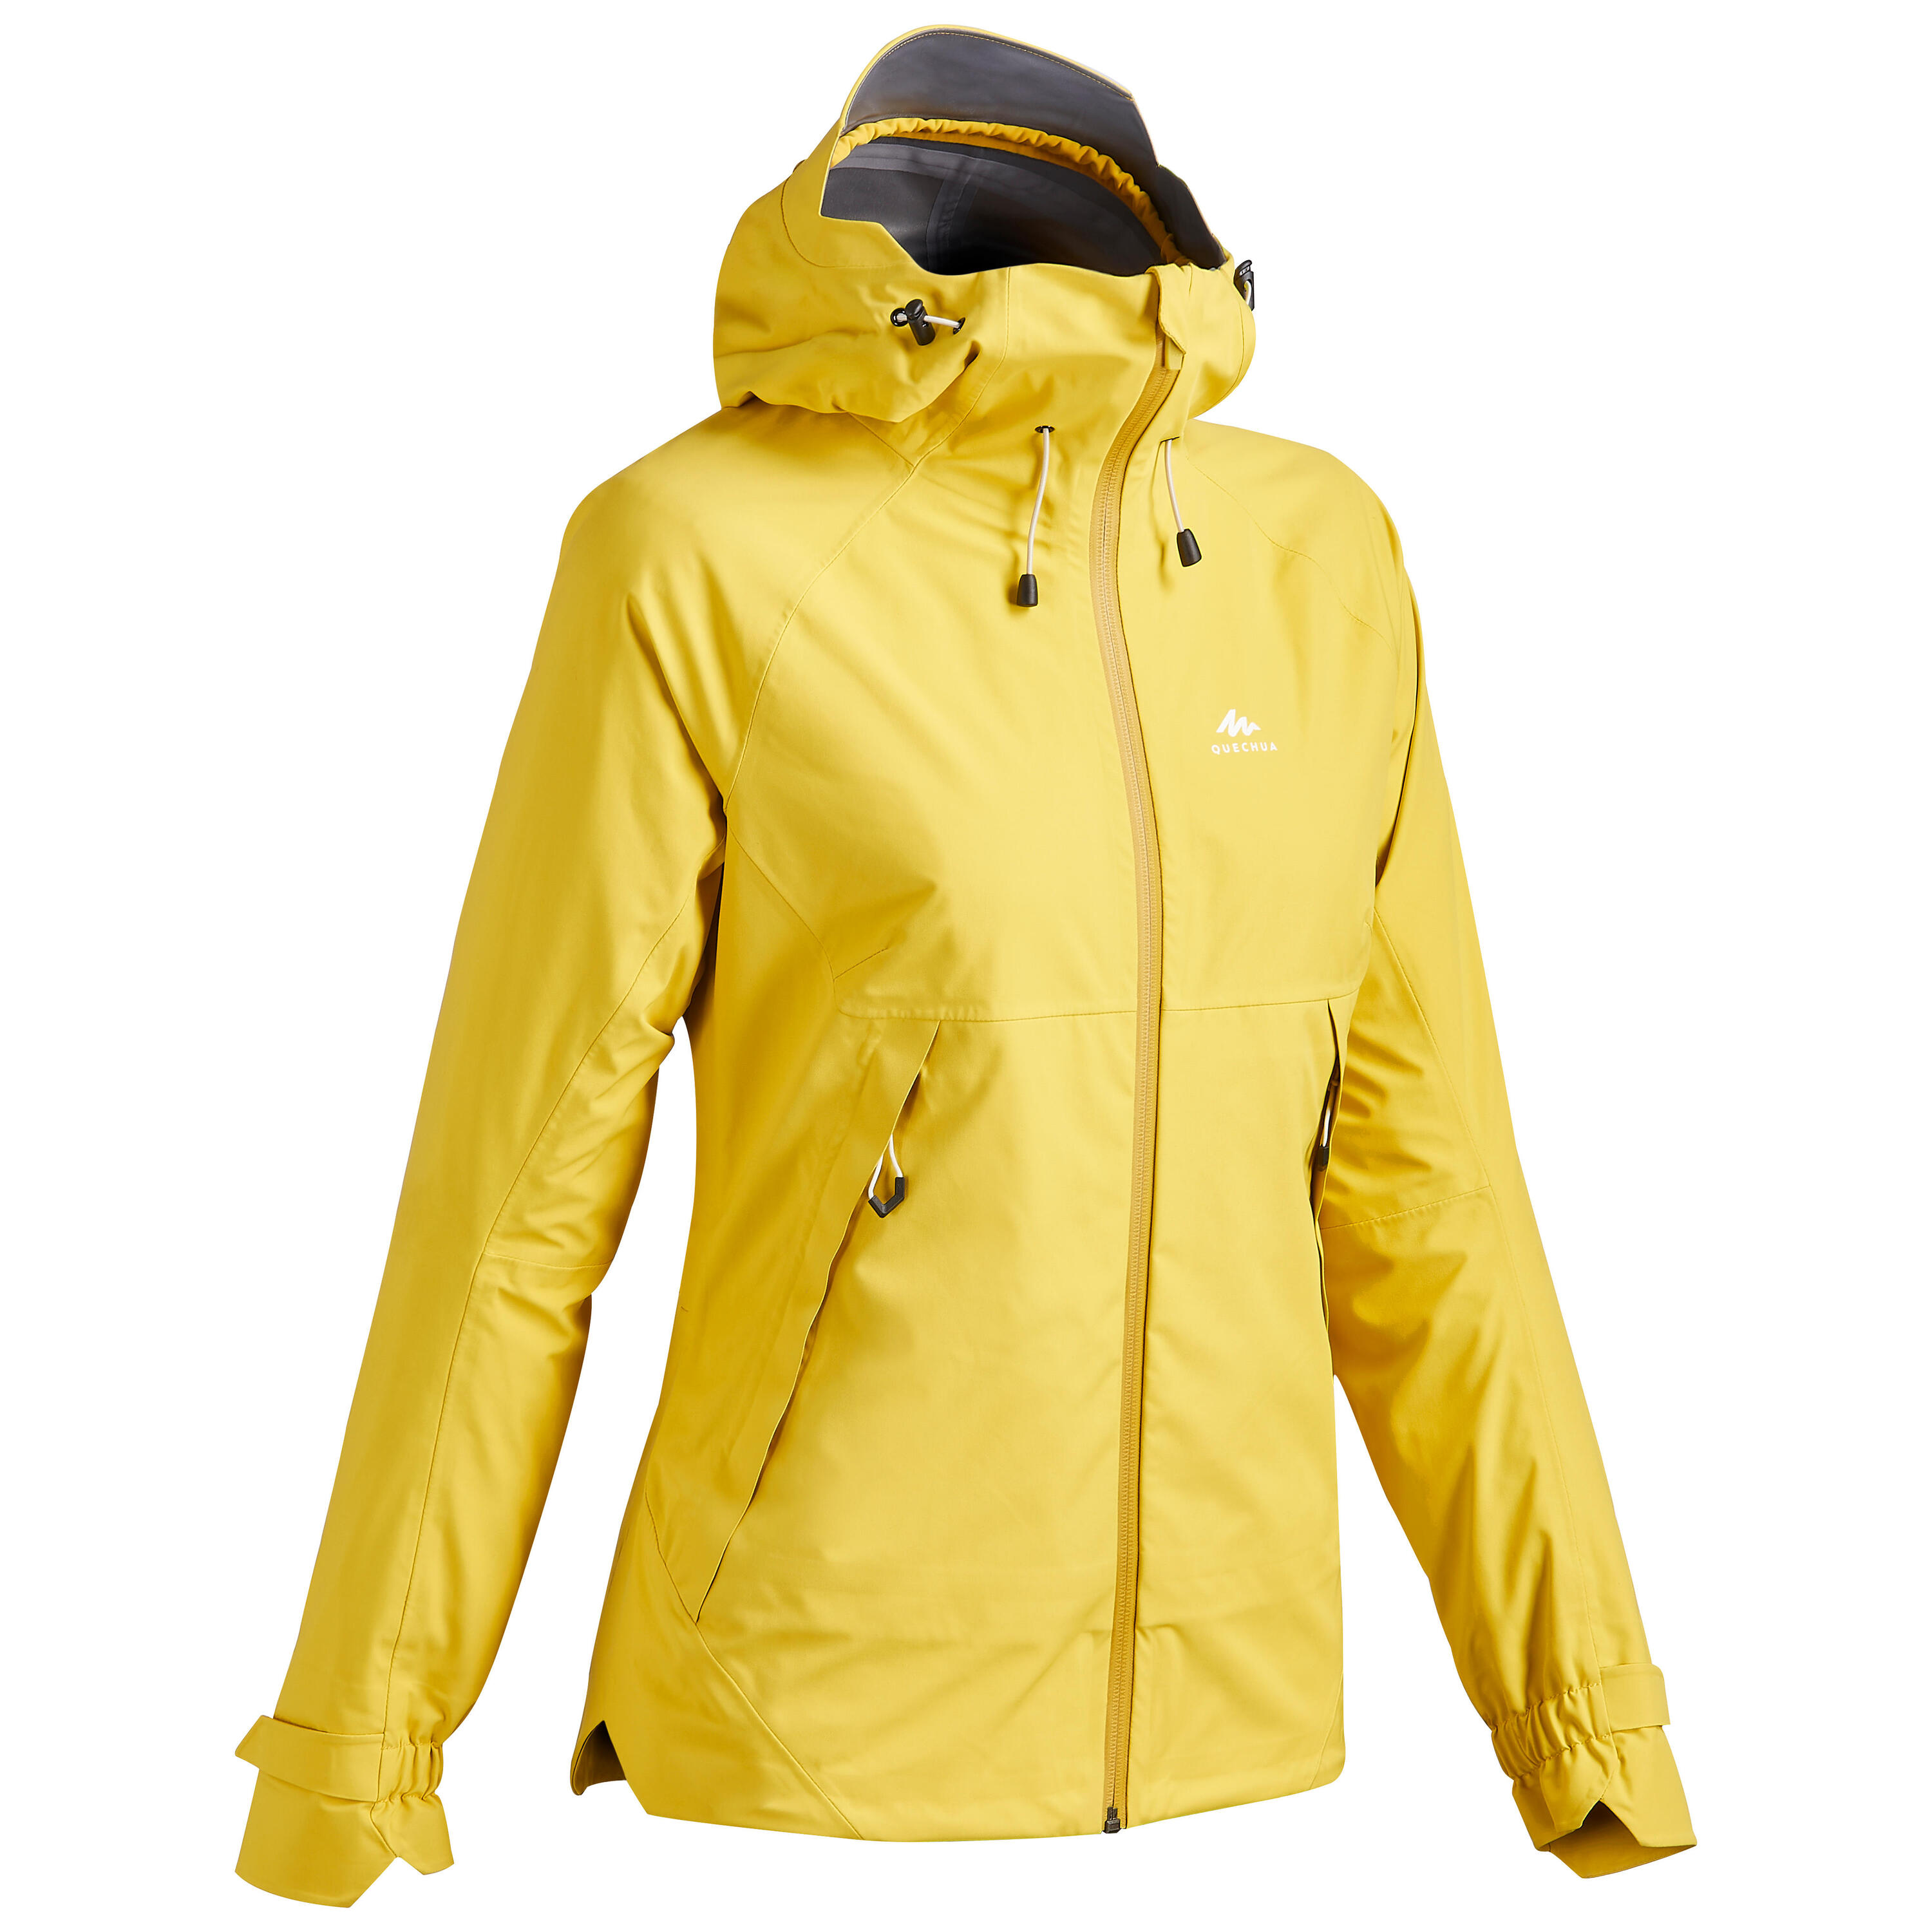 QUECHUA Women's Waterproof Mountain Walking Jacket - MH500